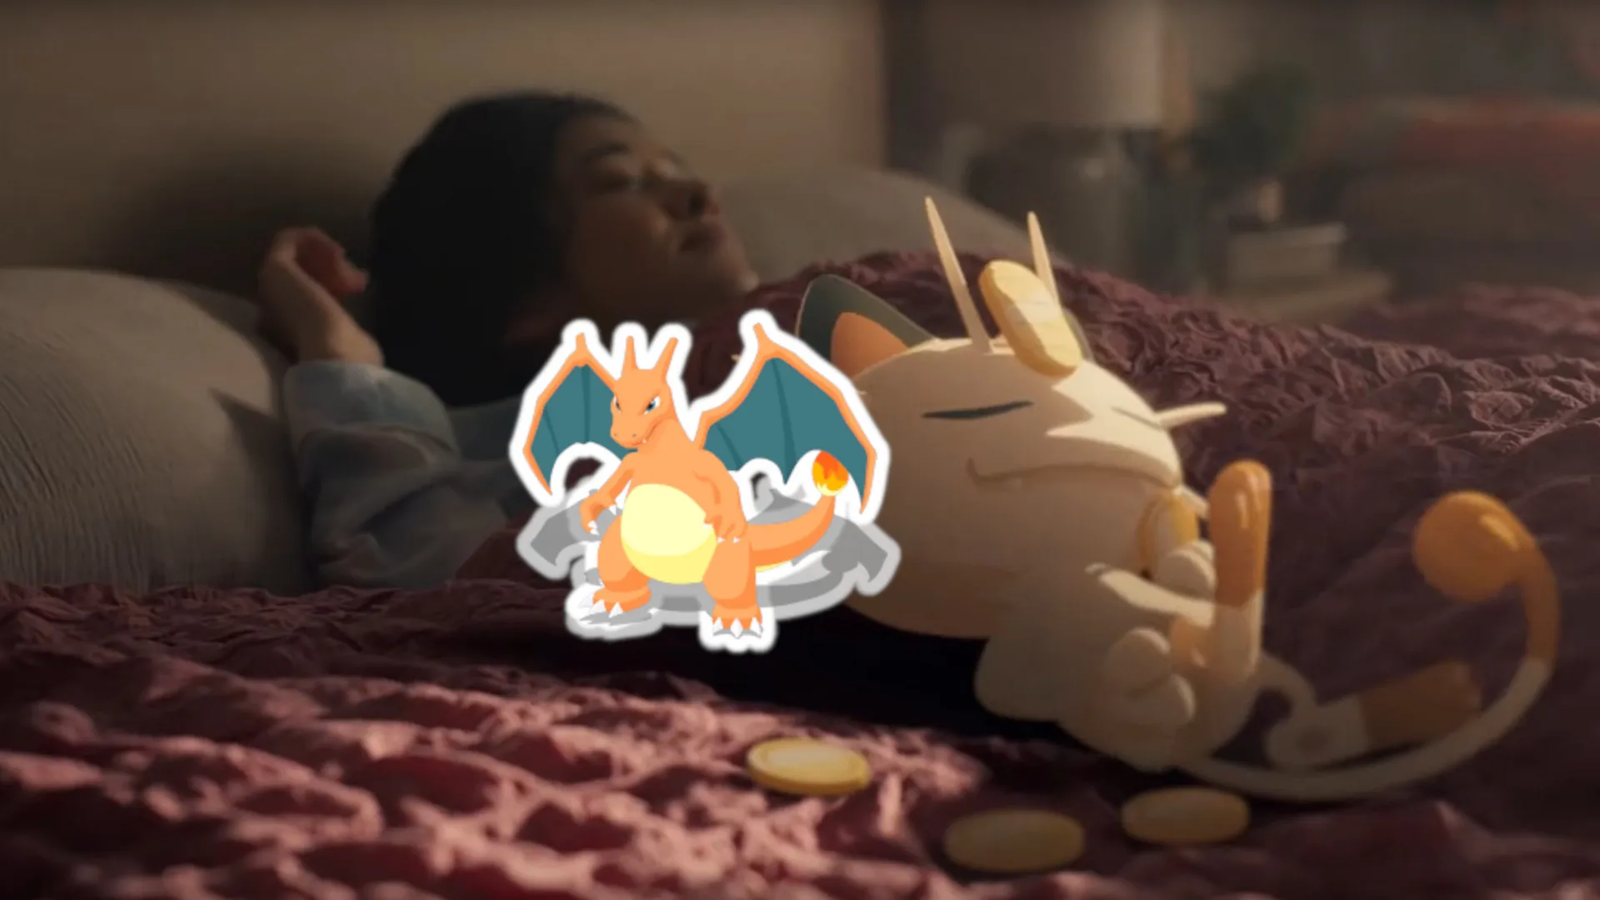 Você já pode jogar Pokémon dormindo. Conheça o Pokémon Sleep